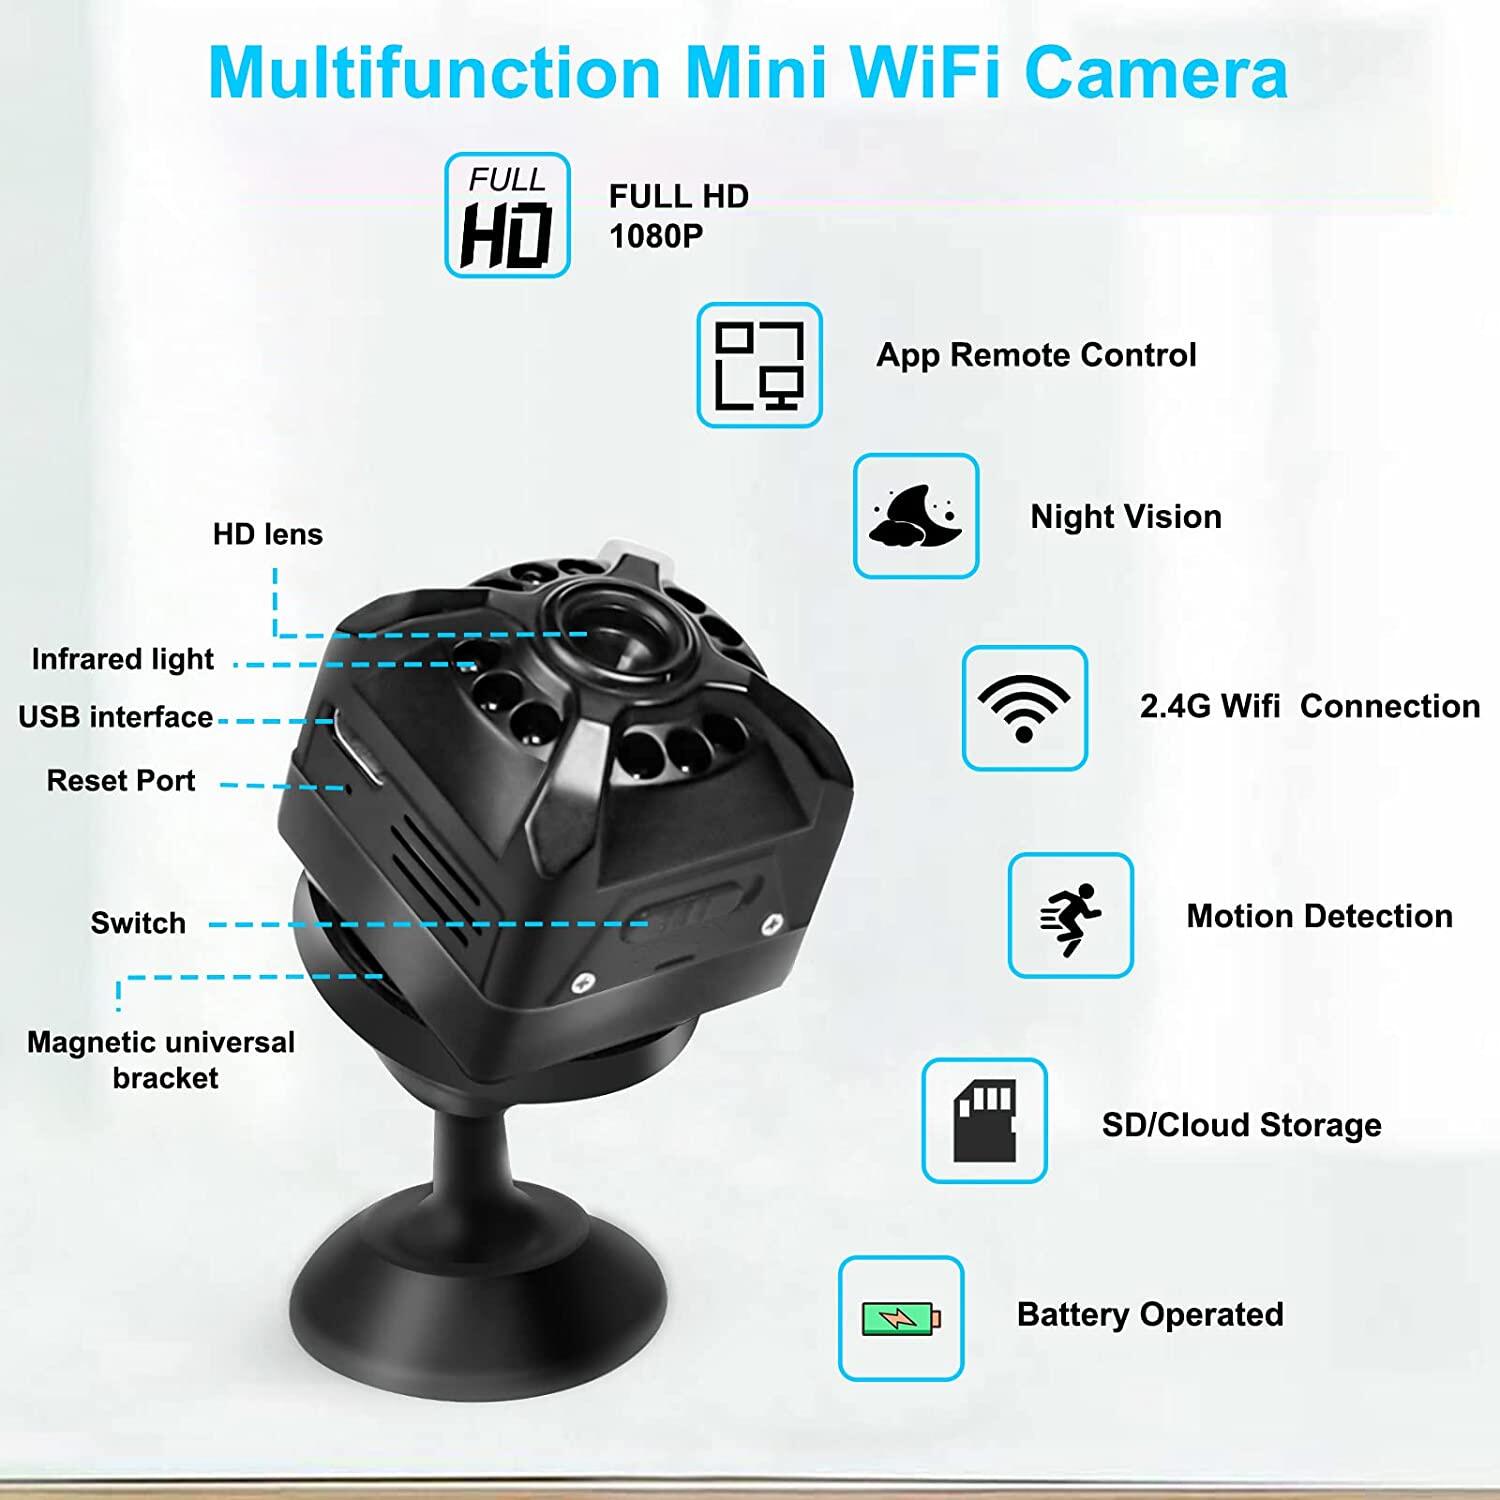 Caméra espion routeur wifi sans fil - Full hd 1080p